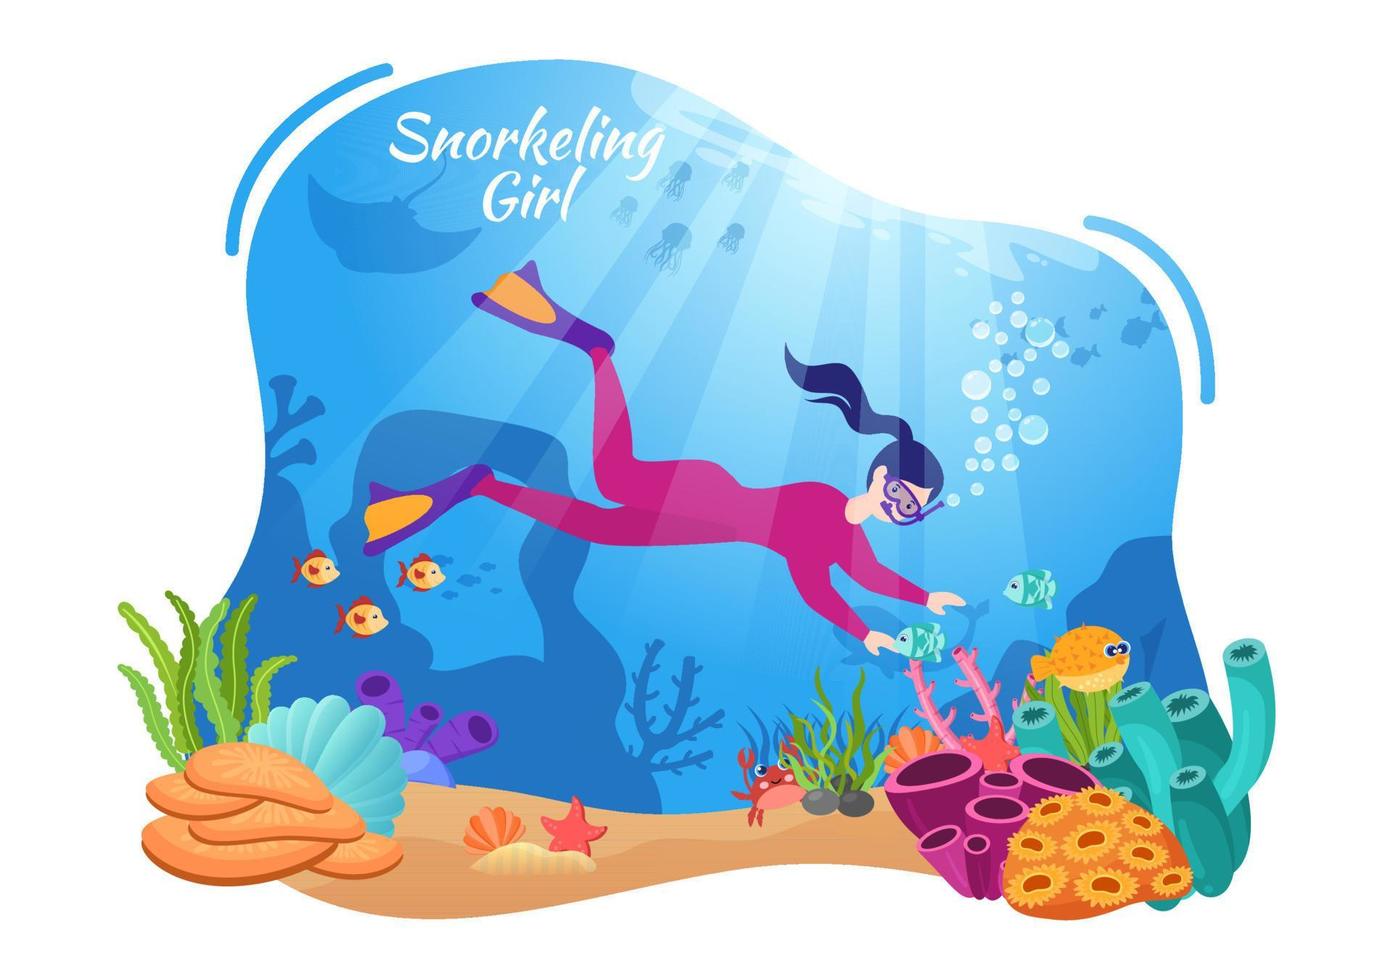 ragazza snorkeling con nuoto subacqueo esplorando il mare, la barriera corallina o il pesce nell'oceano in un'illustrazione vettoriale piatta del fumetto